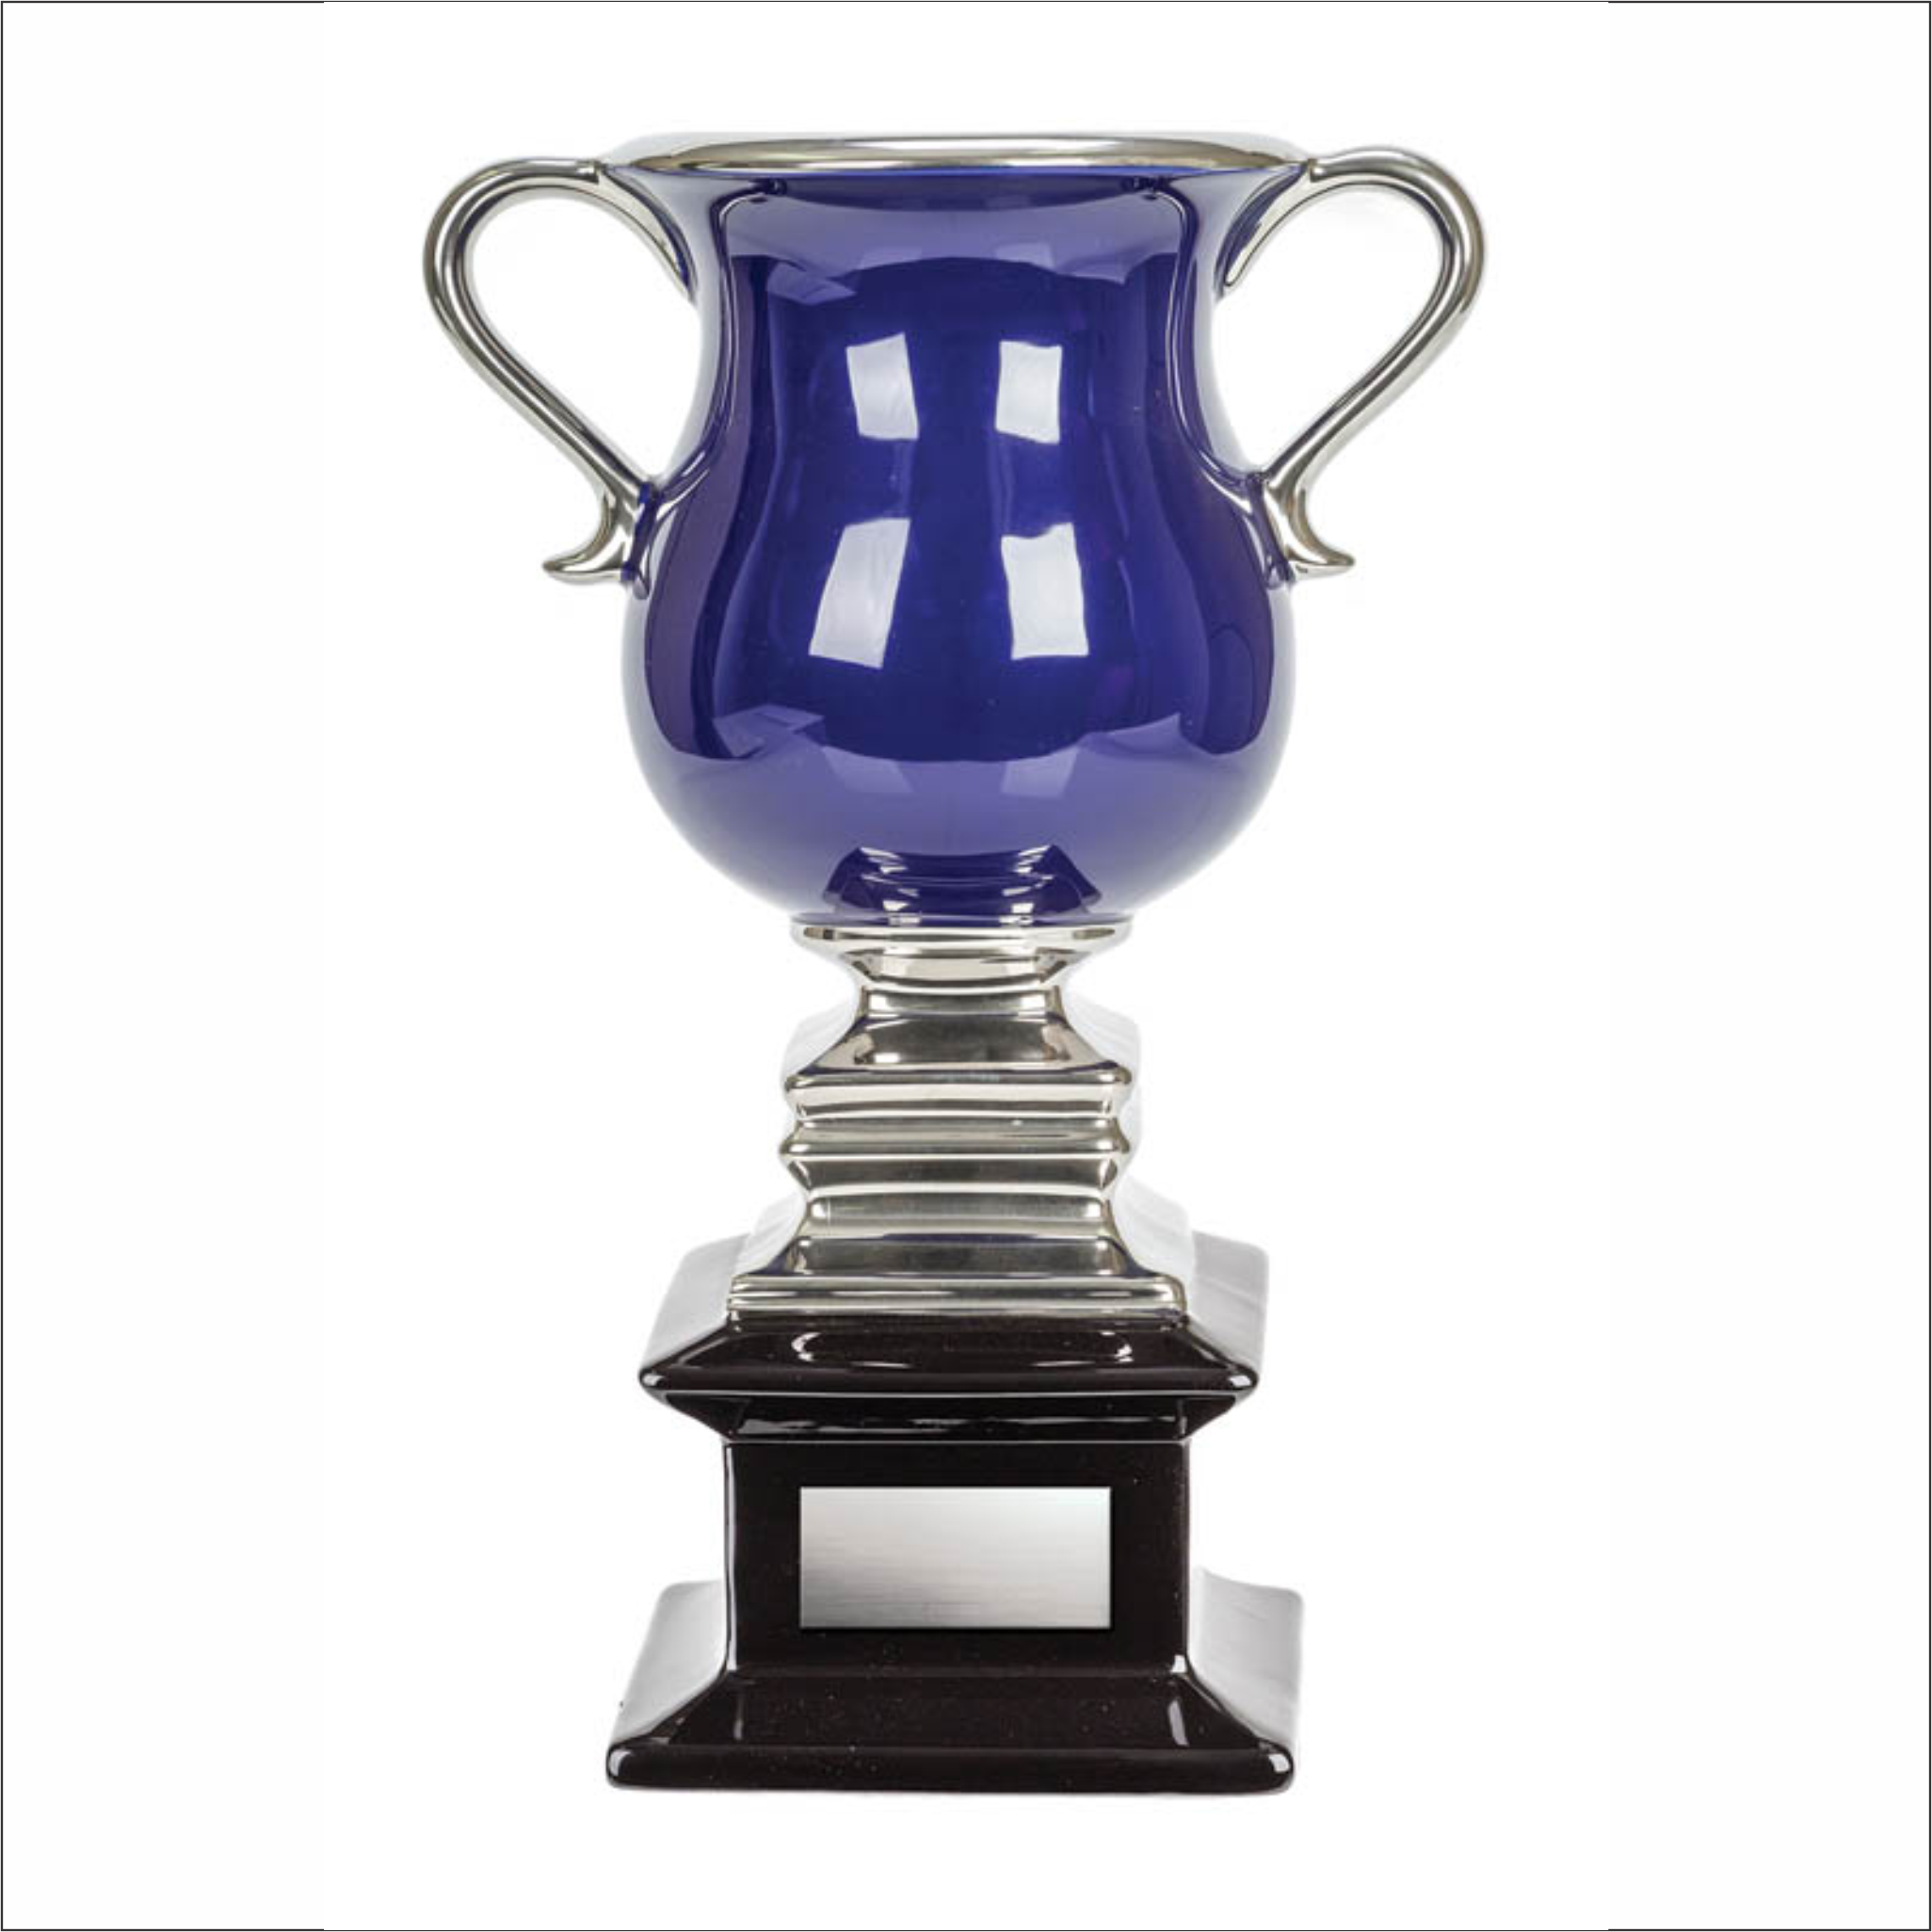 Ceramic Cup - Blue/Silver - Contempo series